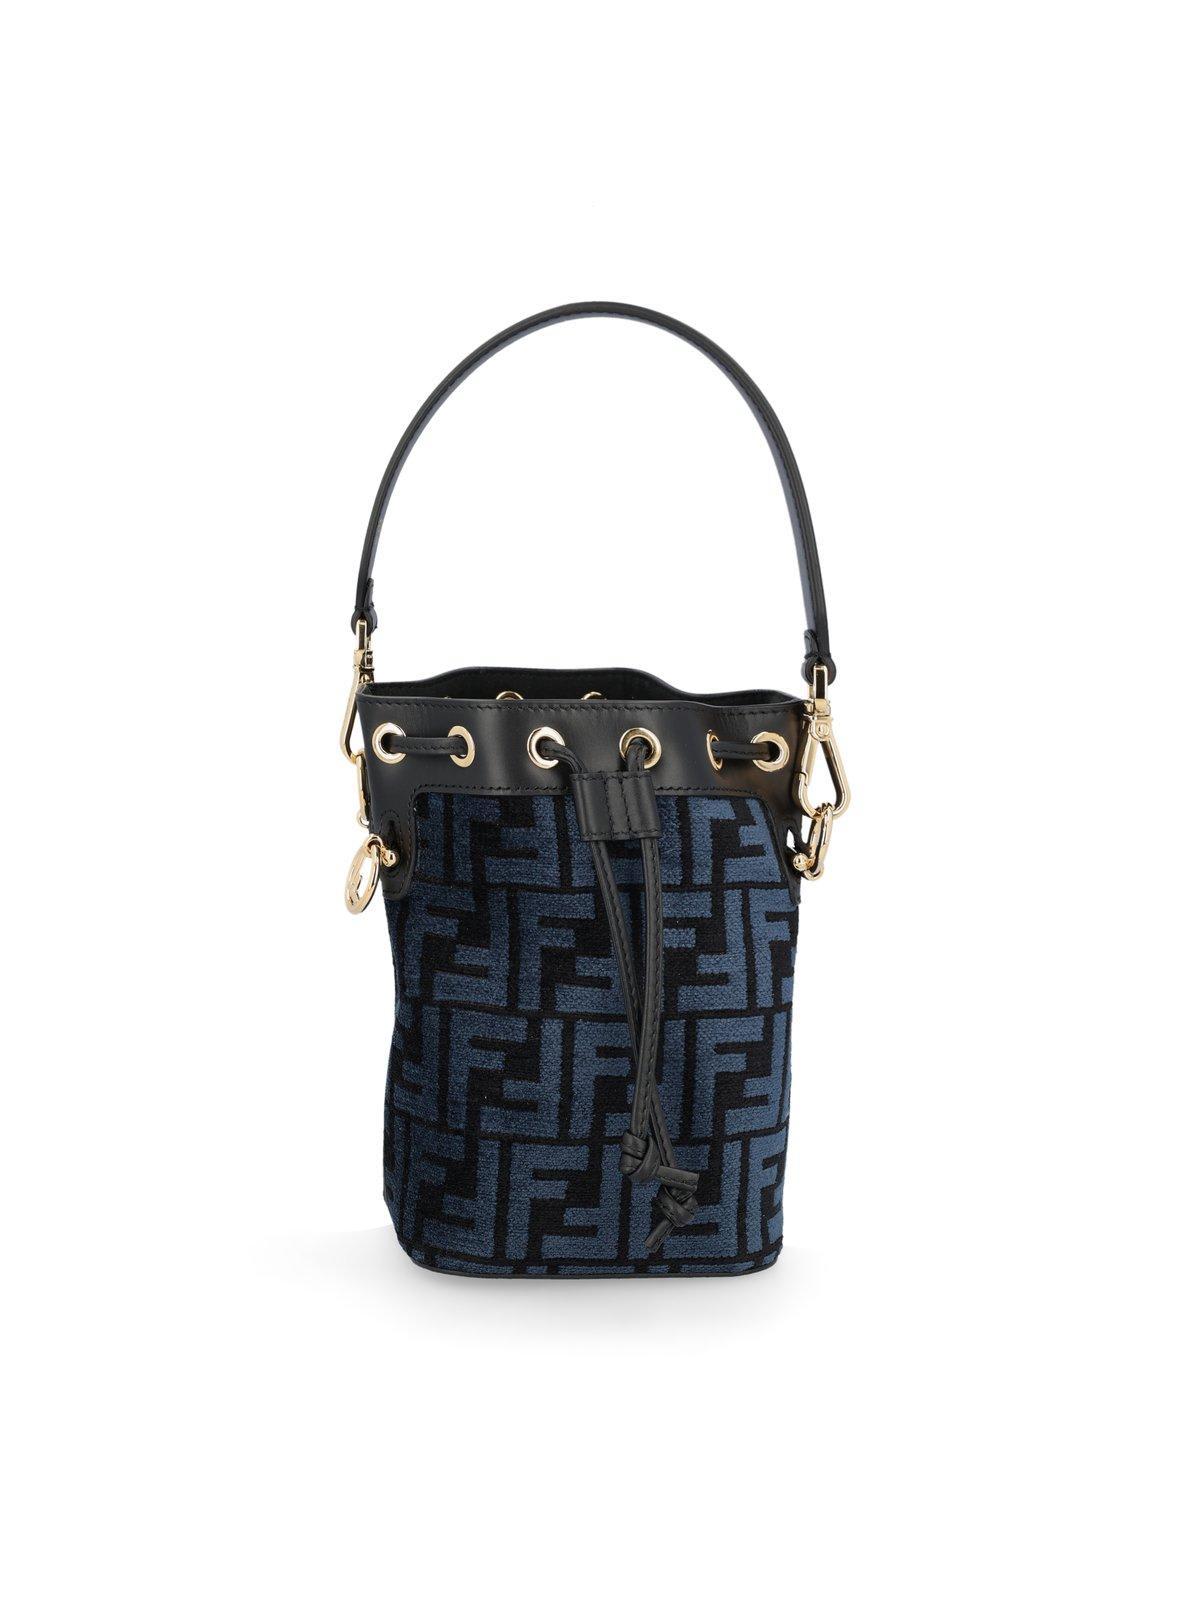 Fendi+Mon+Tresor+Bucket+Bag+Mini+Light+Blue+Leather for sale online